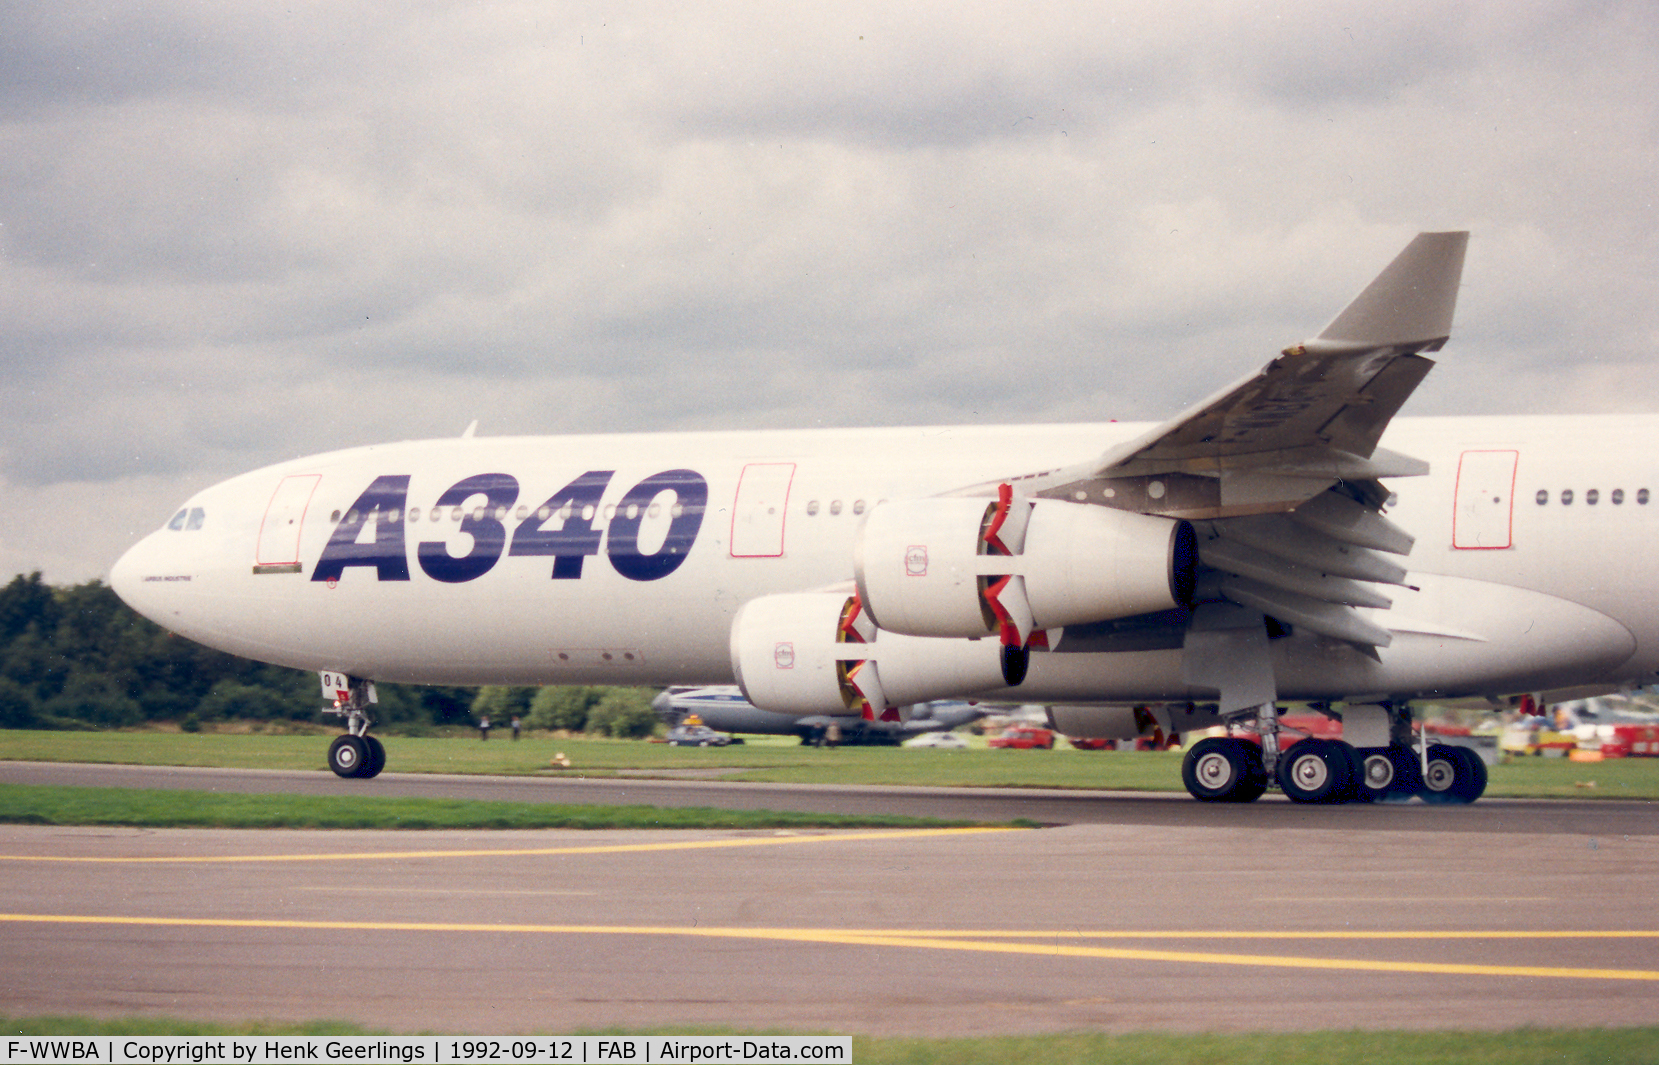 F-WWBA, 1993 Airbus A340-213 C/N 004, Farnborough Air Show 1992